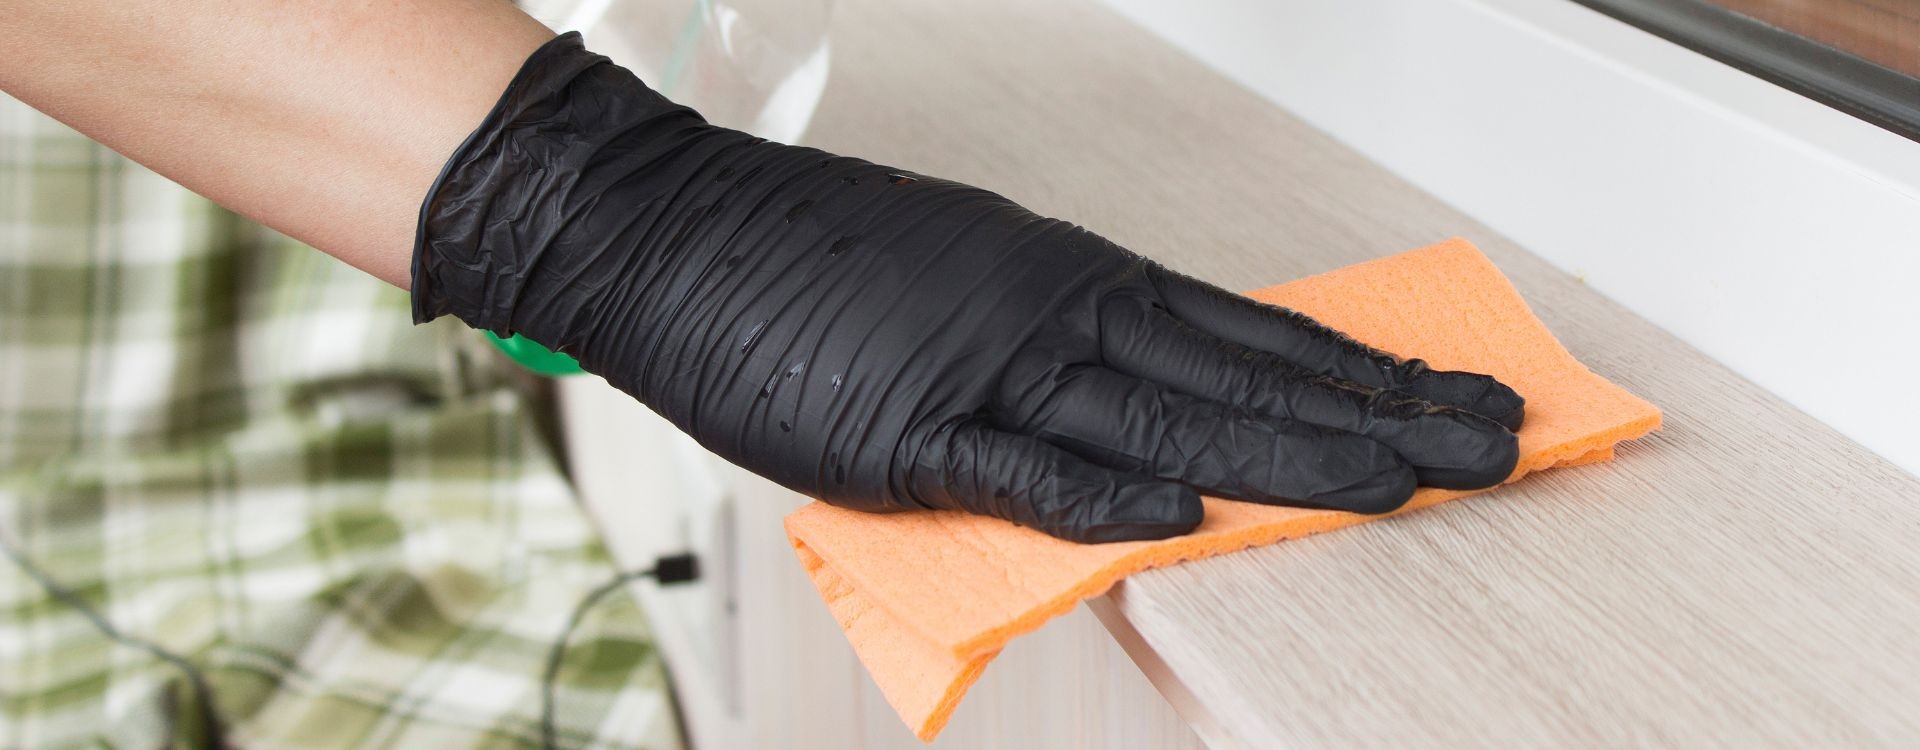 Cómo elegir los guantes de nitrilo?